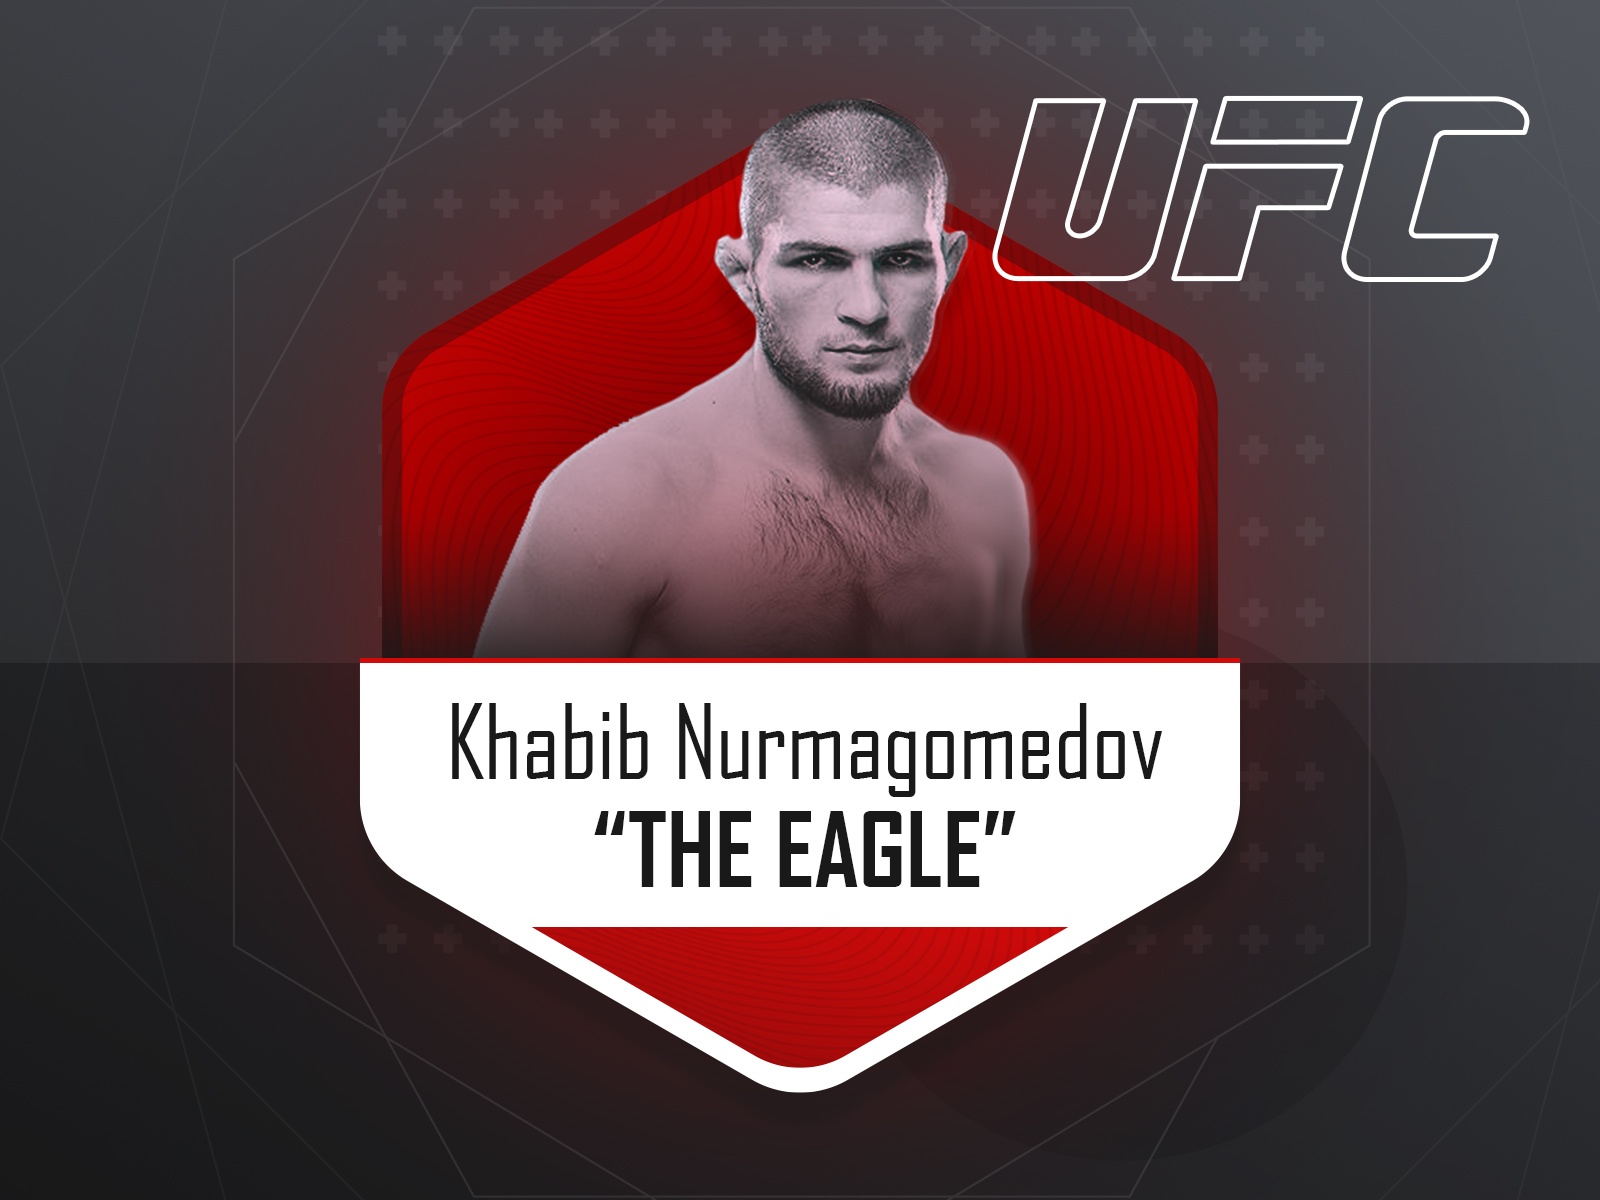 Khabib Nurmagomedov - UFC fighter